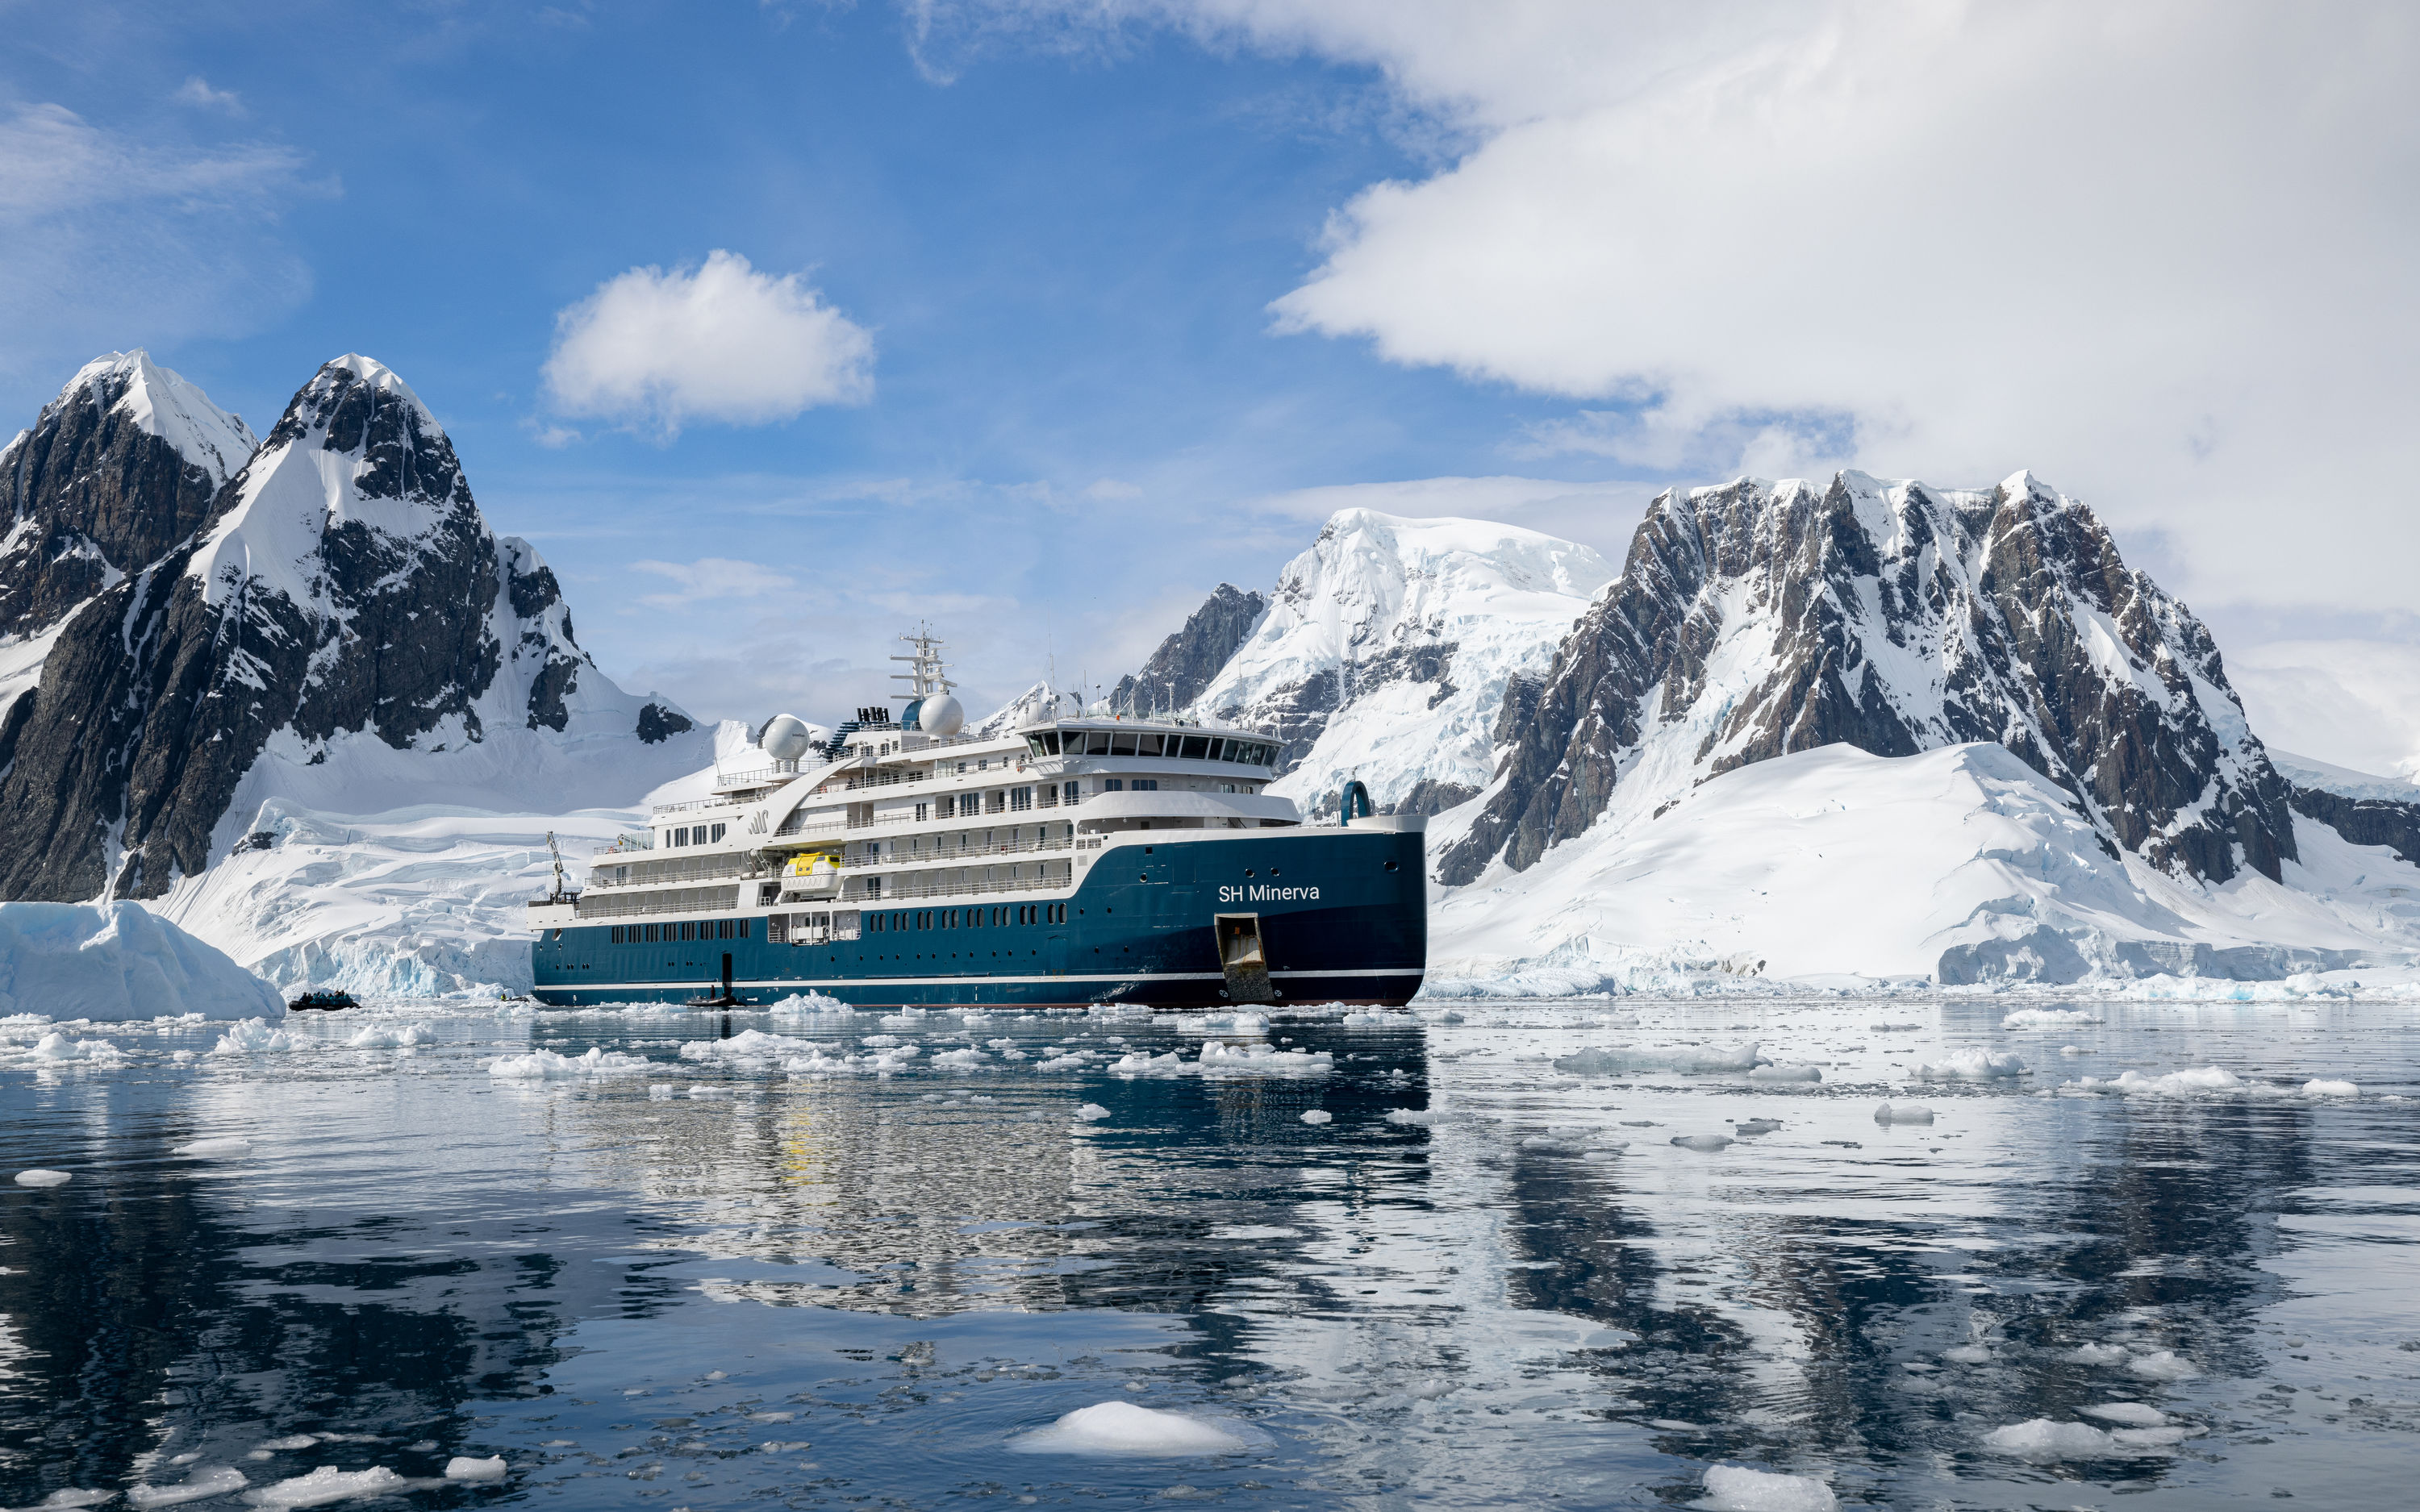 antarctica cruises uk